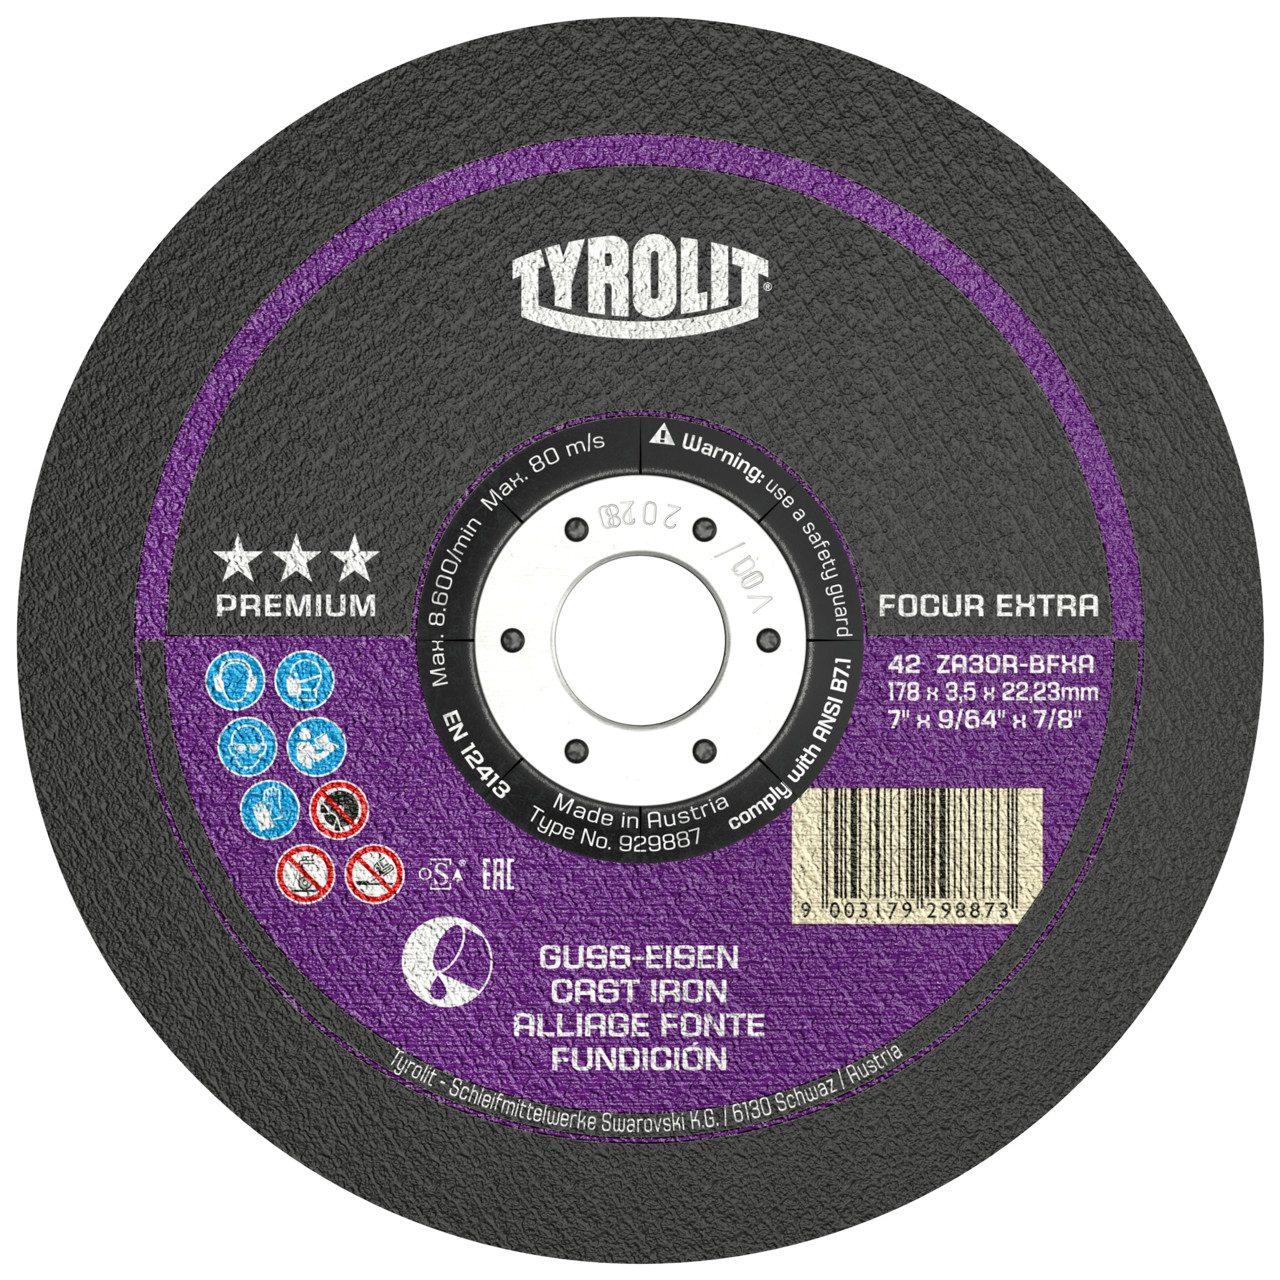 TYROLIT discos de corte DxUxH 230x3,0x22,23 FOCUR Extra para fundición gris, forma: 42 - versión offset, Art. 635268